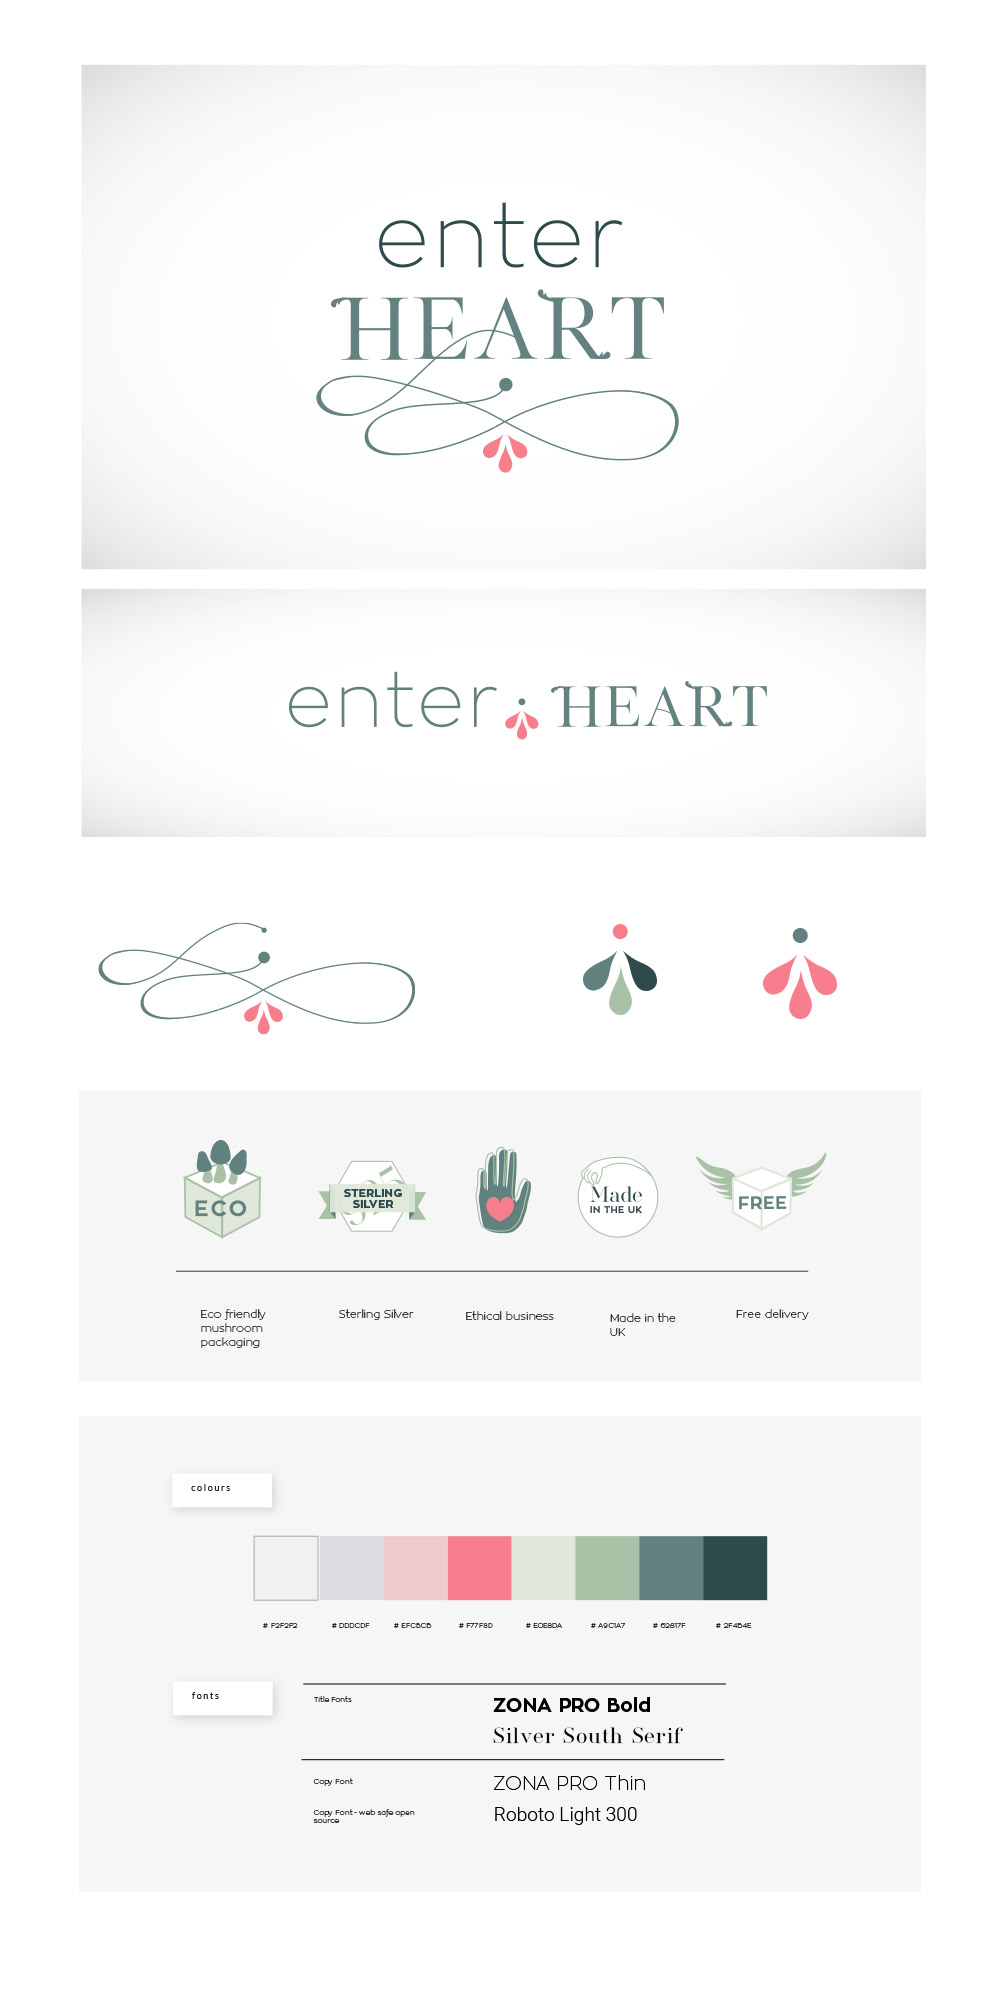 Enter-Heart-Branding-Design